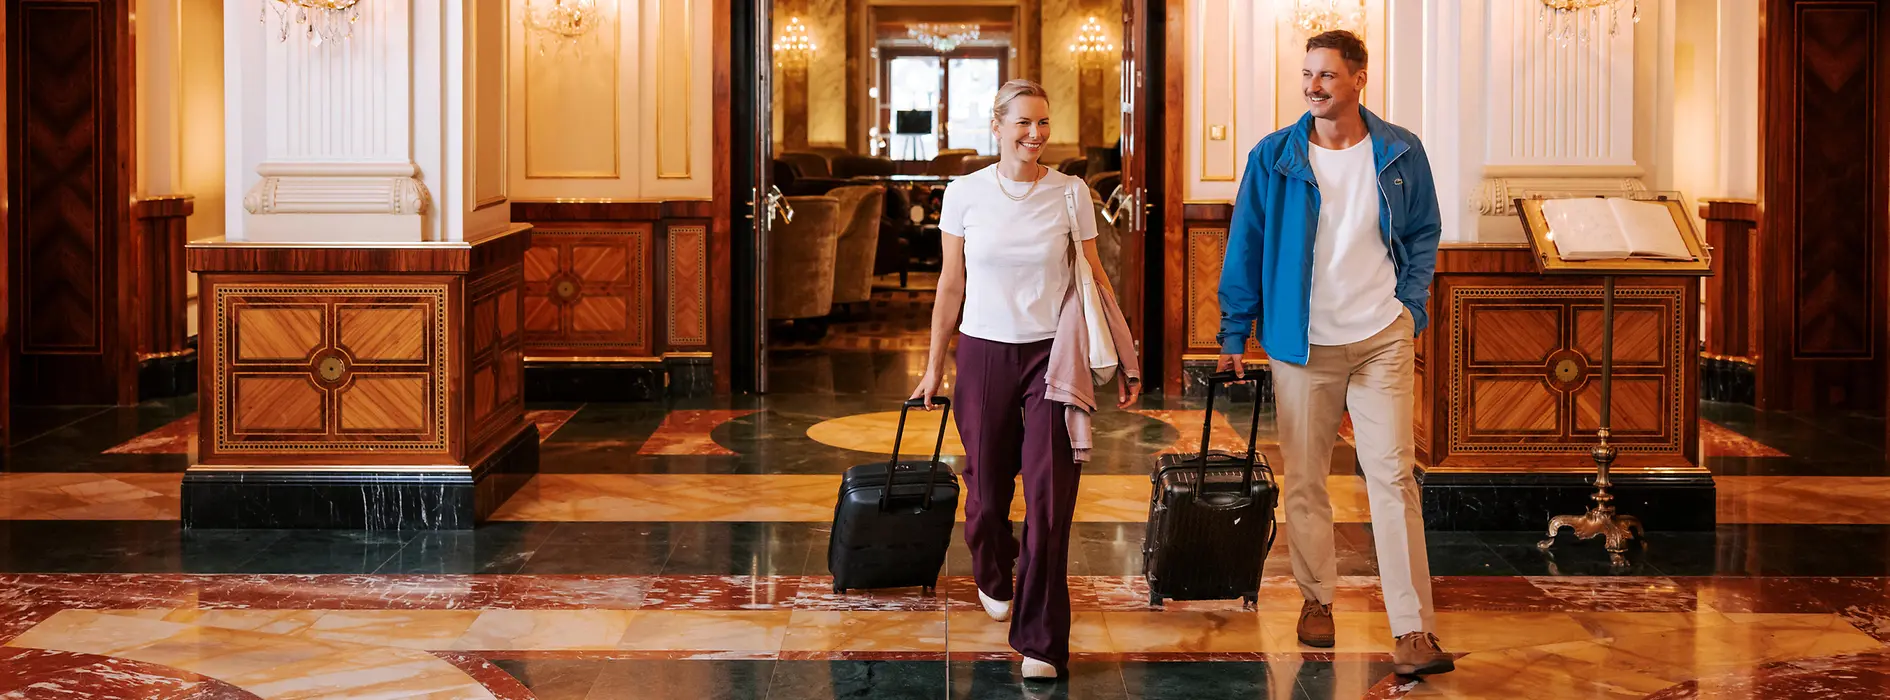 Zwei Frauen mit Gepäck in einem Wiener Hotel